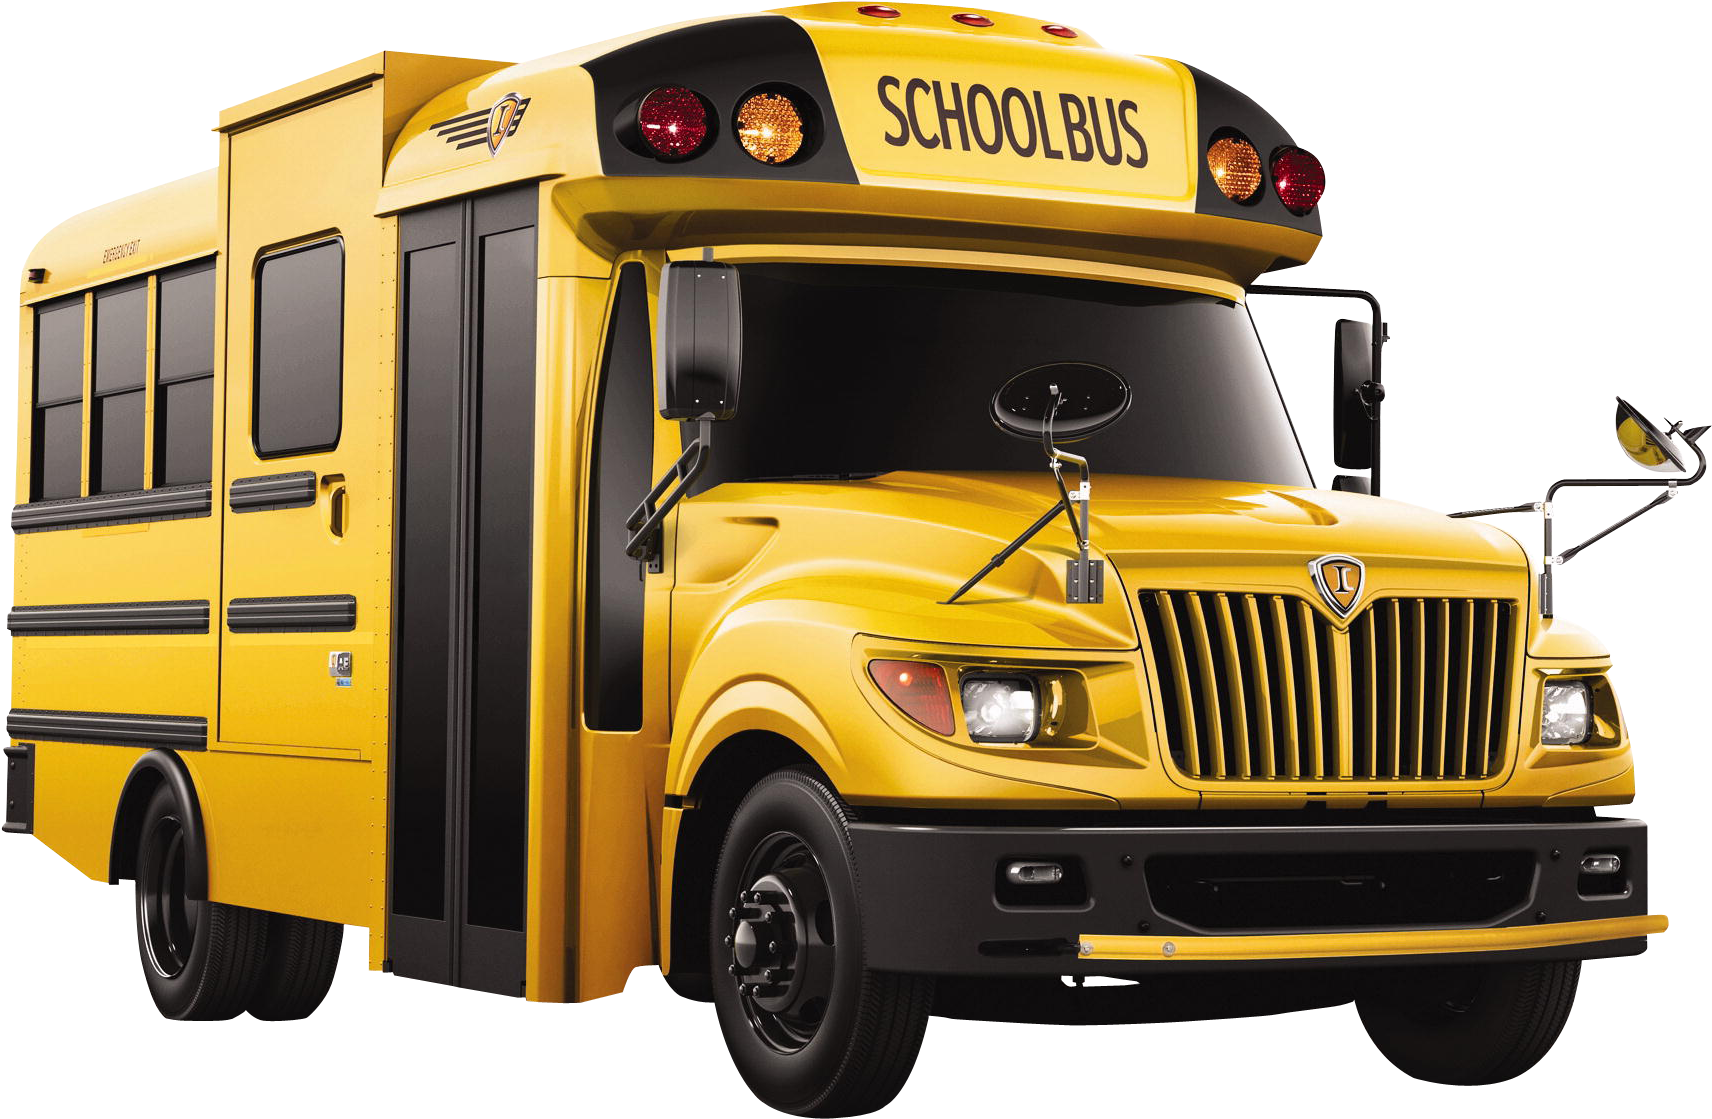 School Bus - Ic Ae School Bus (1827x1228)